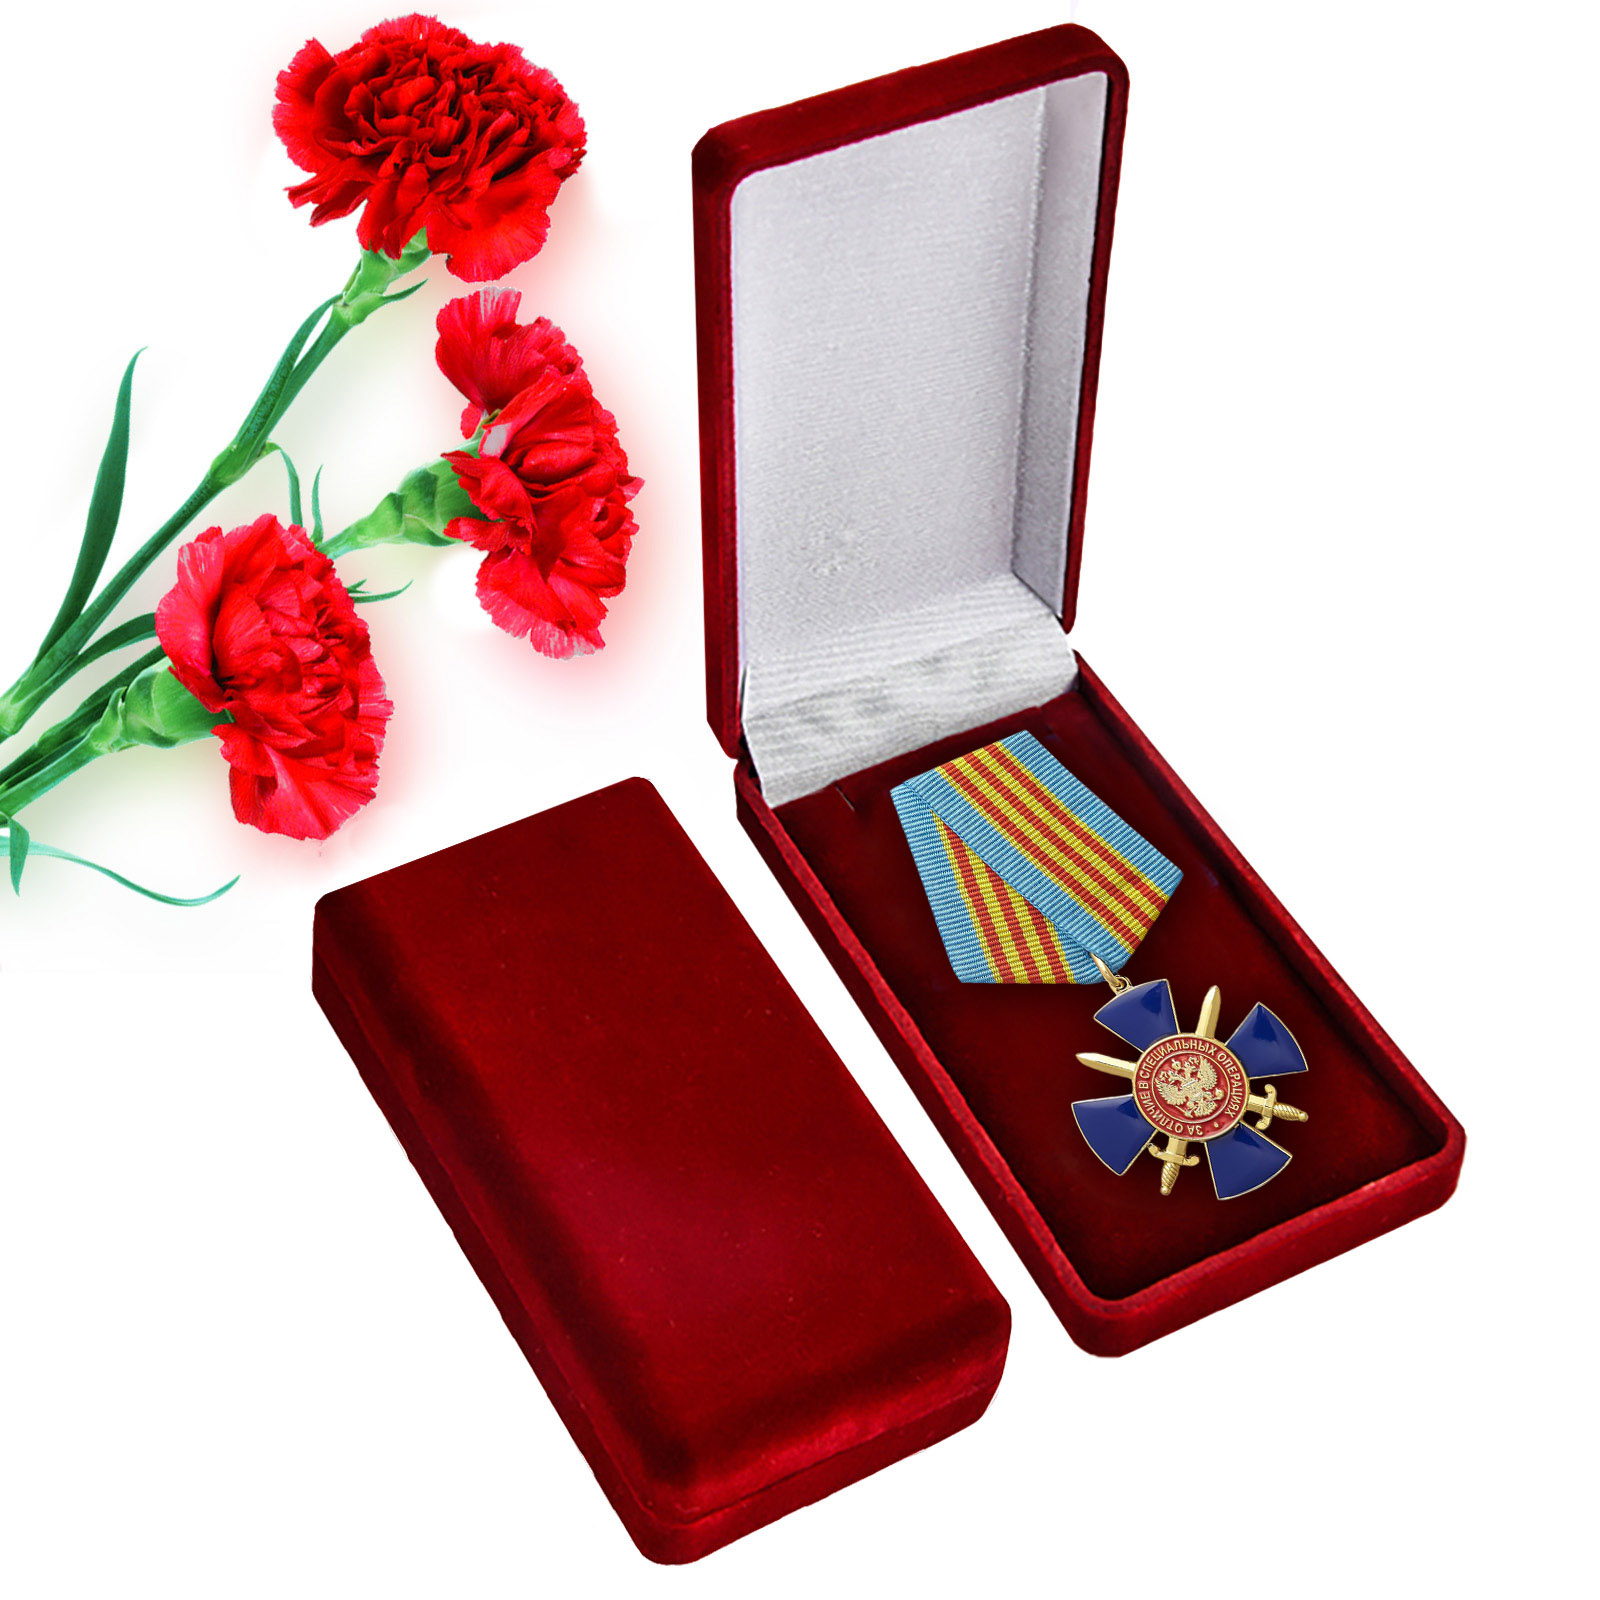 Медаль "За отличие в специальных операциях" ФСБ России